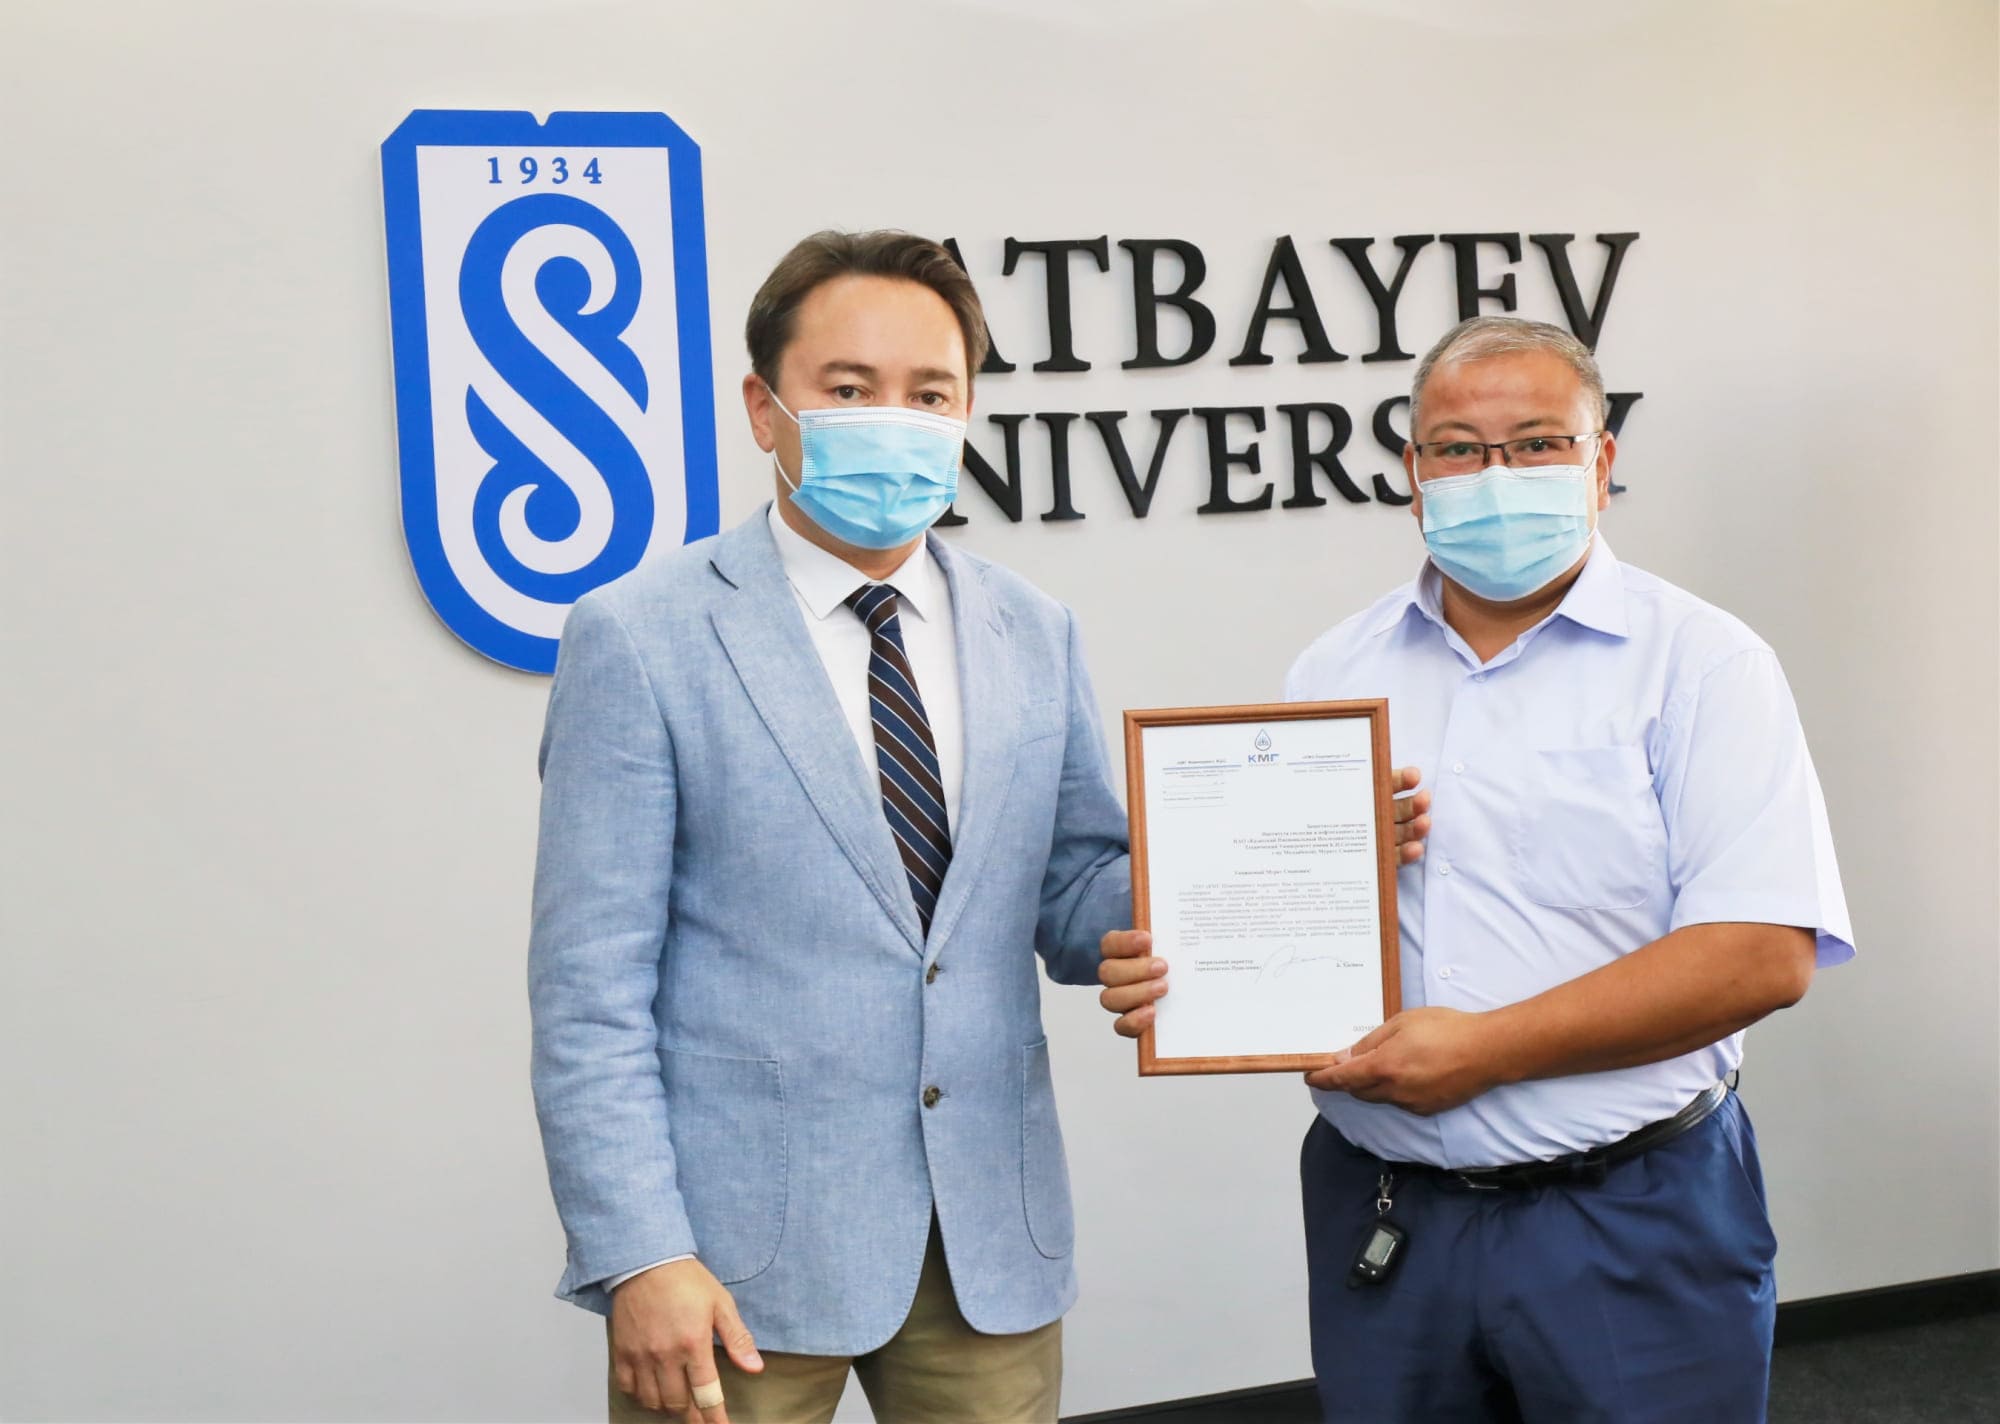 Satbayev University поздравляет работников нефтегазового комплекса